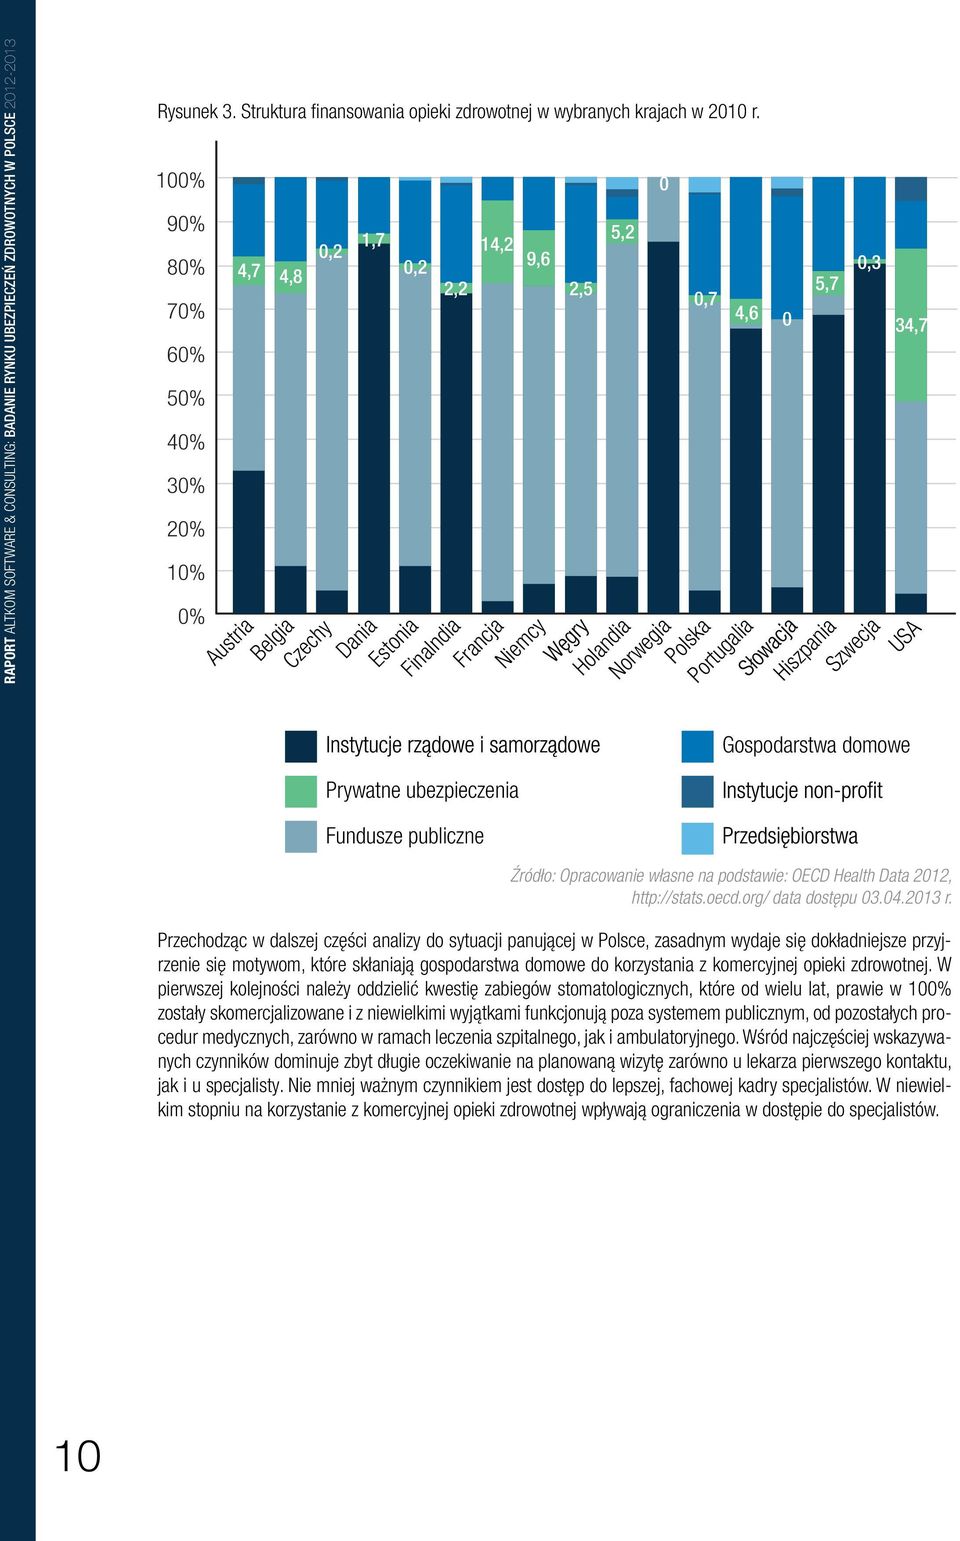 polska portugalia 0 5,7 0,3 Hiszpania szwecja usa gospodarstwa domowe 34,7 fundusze publiczne Źródło: Opracowanie własne na podstawie: OECD Health Data 2012, http://stats.oecd.org/ data dostępu 03.04.